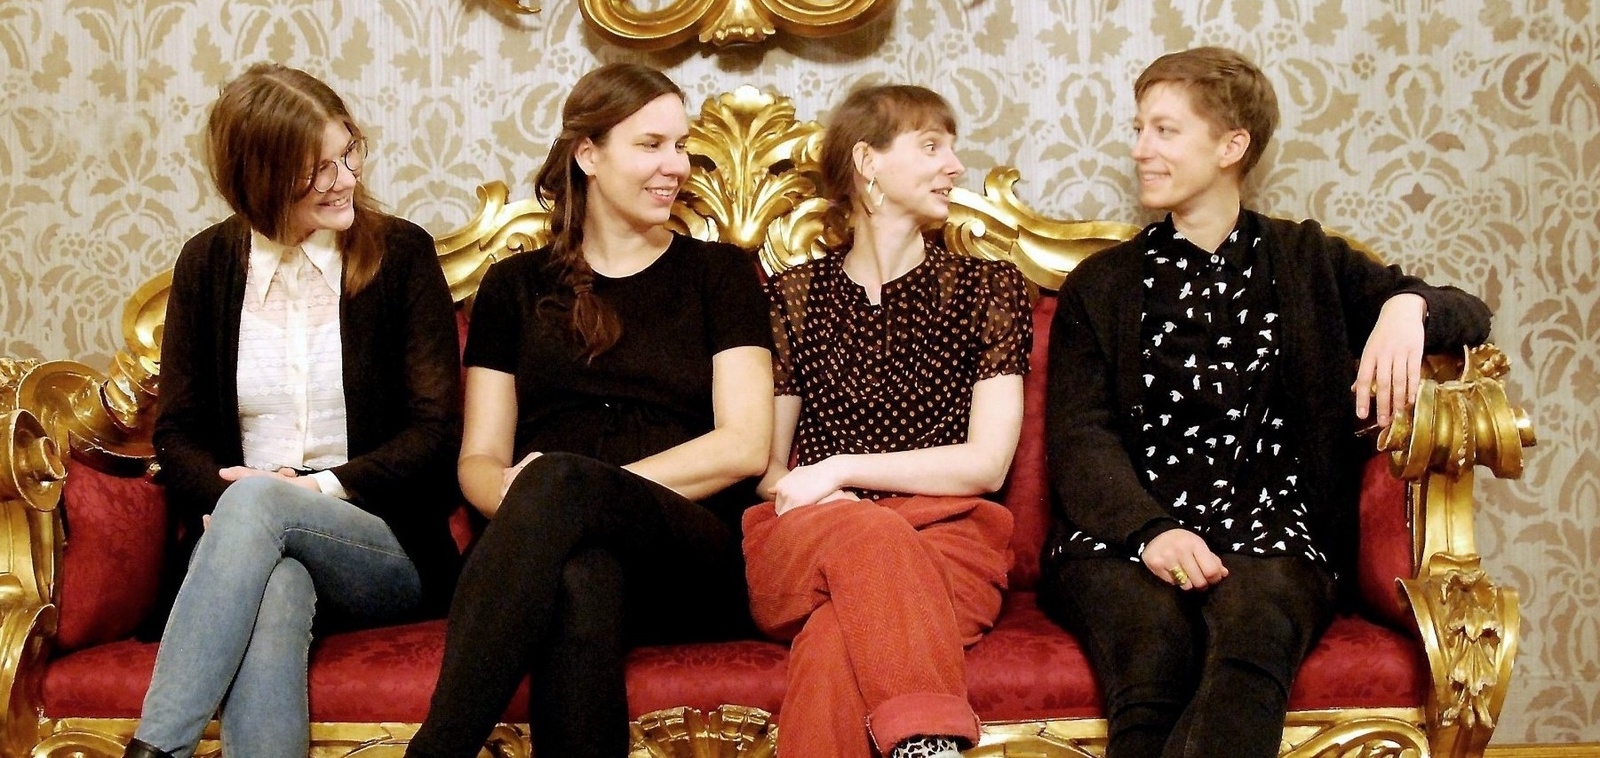 Vindla String Quartet består av Caroline Karpinska, Maria Bergström, Elina Nygren och Gerda Holmquist. 
Foto: Gunilla wedding